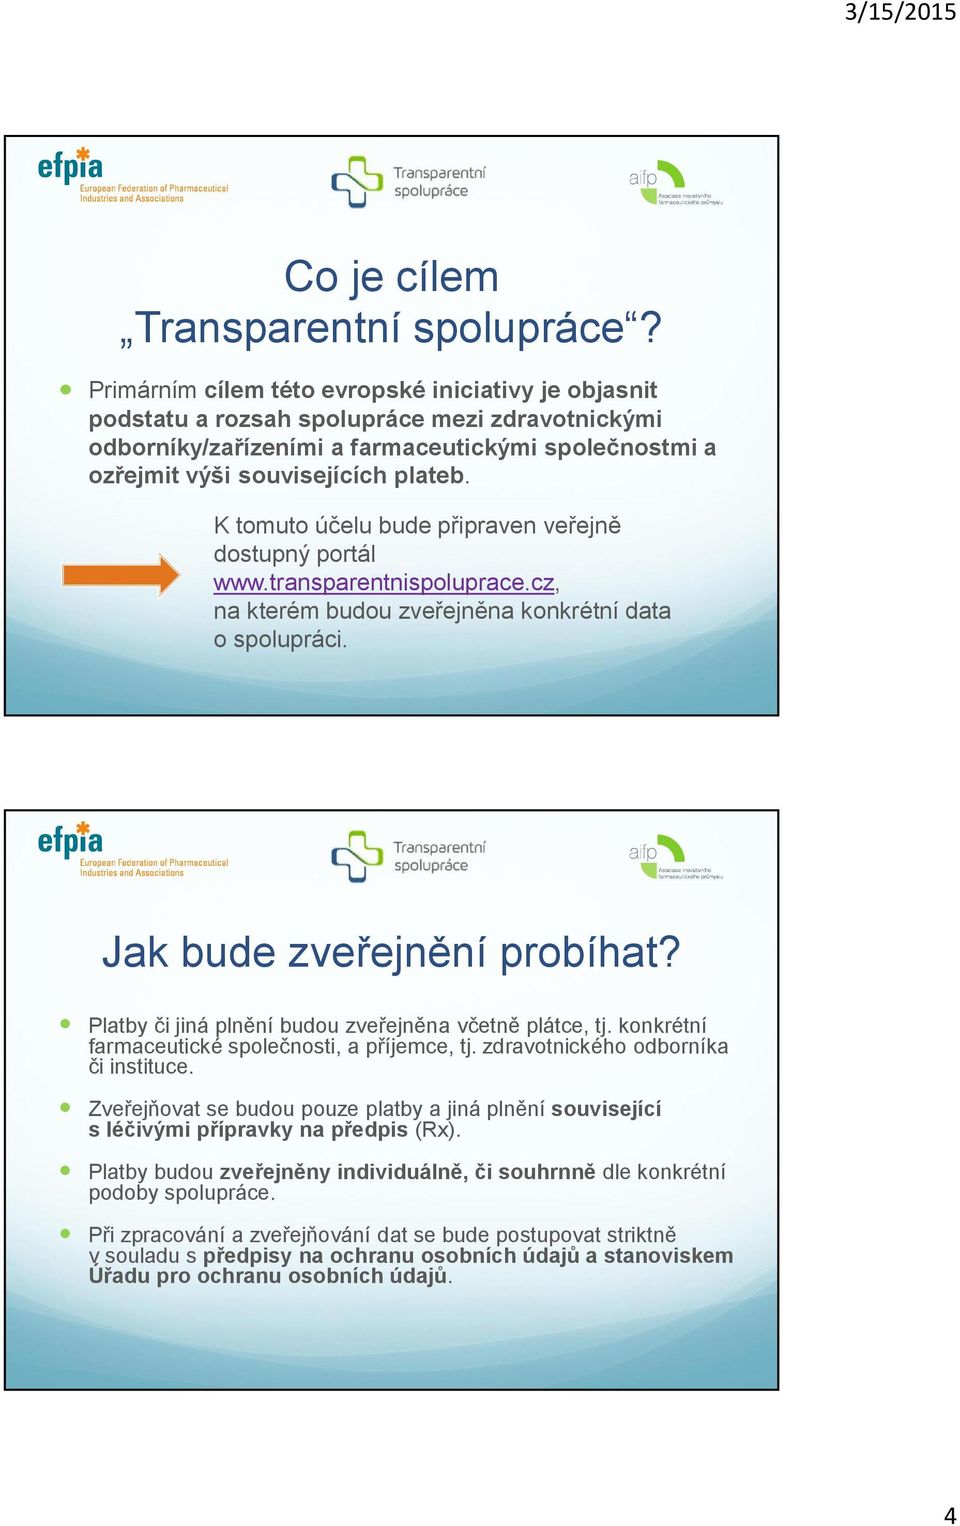 K tomuto účelu bude připraven veřejně dostupný portál www.transparentnispoluprace.cz, na kterém budou zveřejněna konkrétní data o spolupráci. Jak bude zveřejnění probíhat?